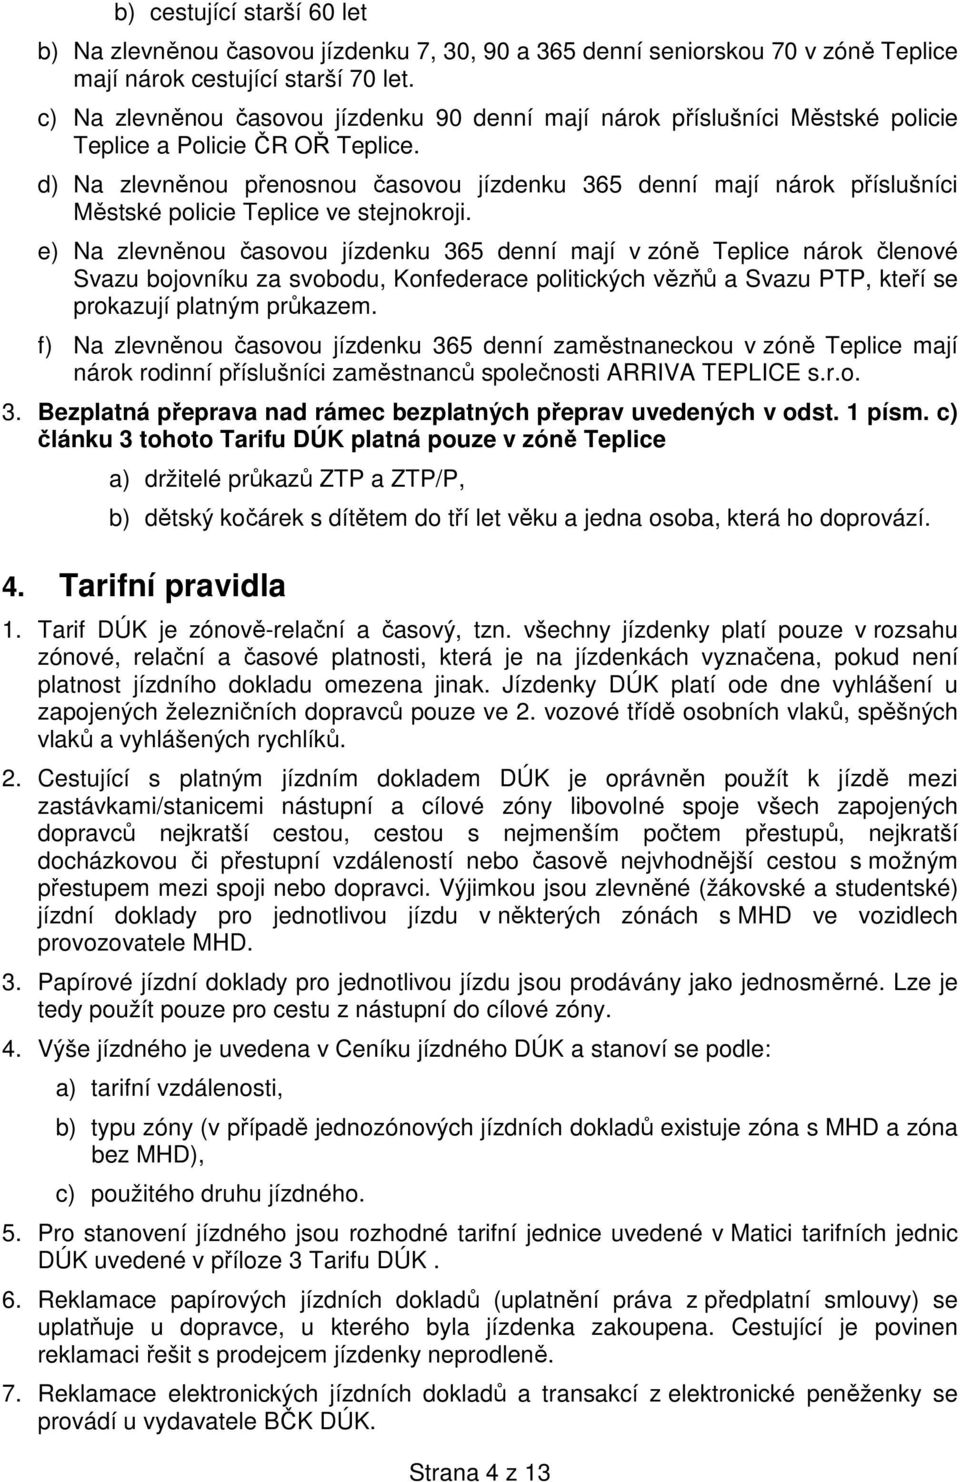 d) Na zlevněnou přenosnou časovou jízdenku 365 denní mají nárok příslušníci Městské policie Teplice ve stejnokroji.